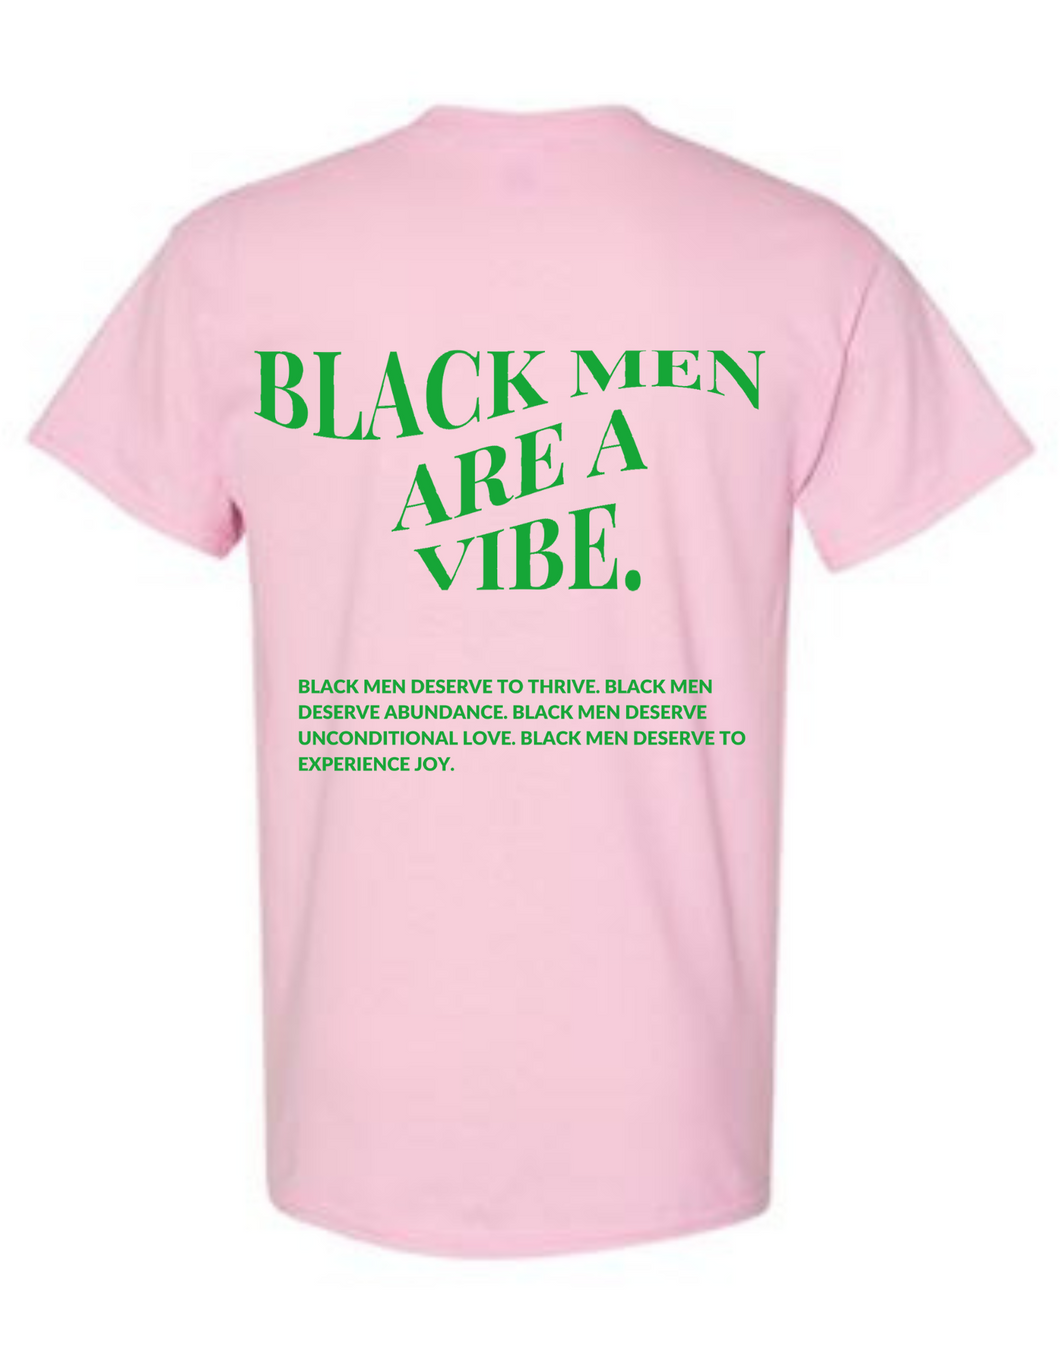 BLACK MEN ARE A VIBE TEE- ROSE QUARTZ